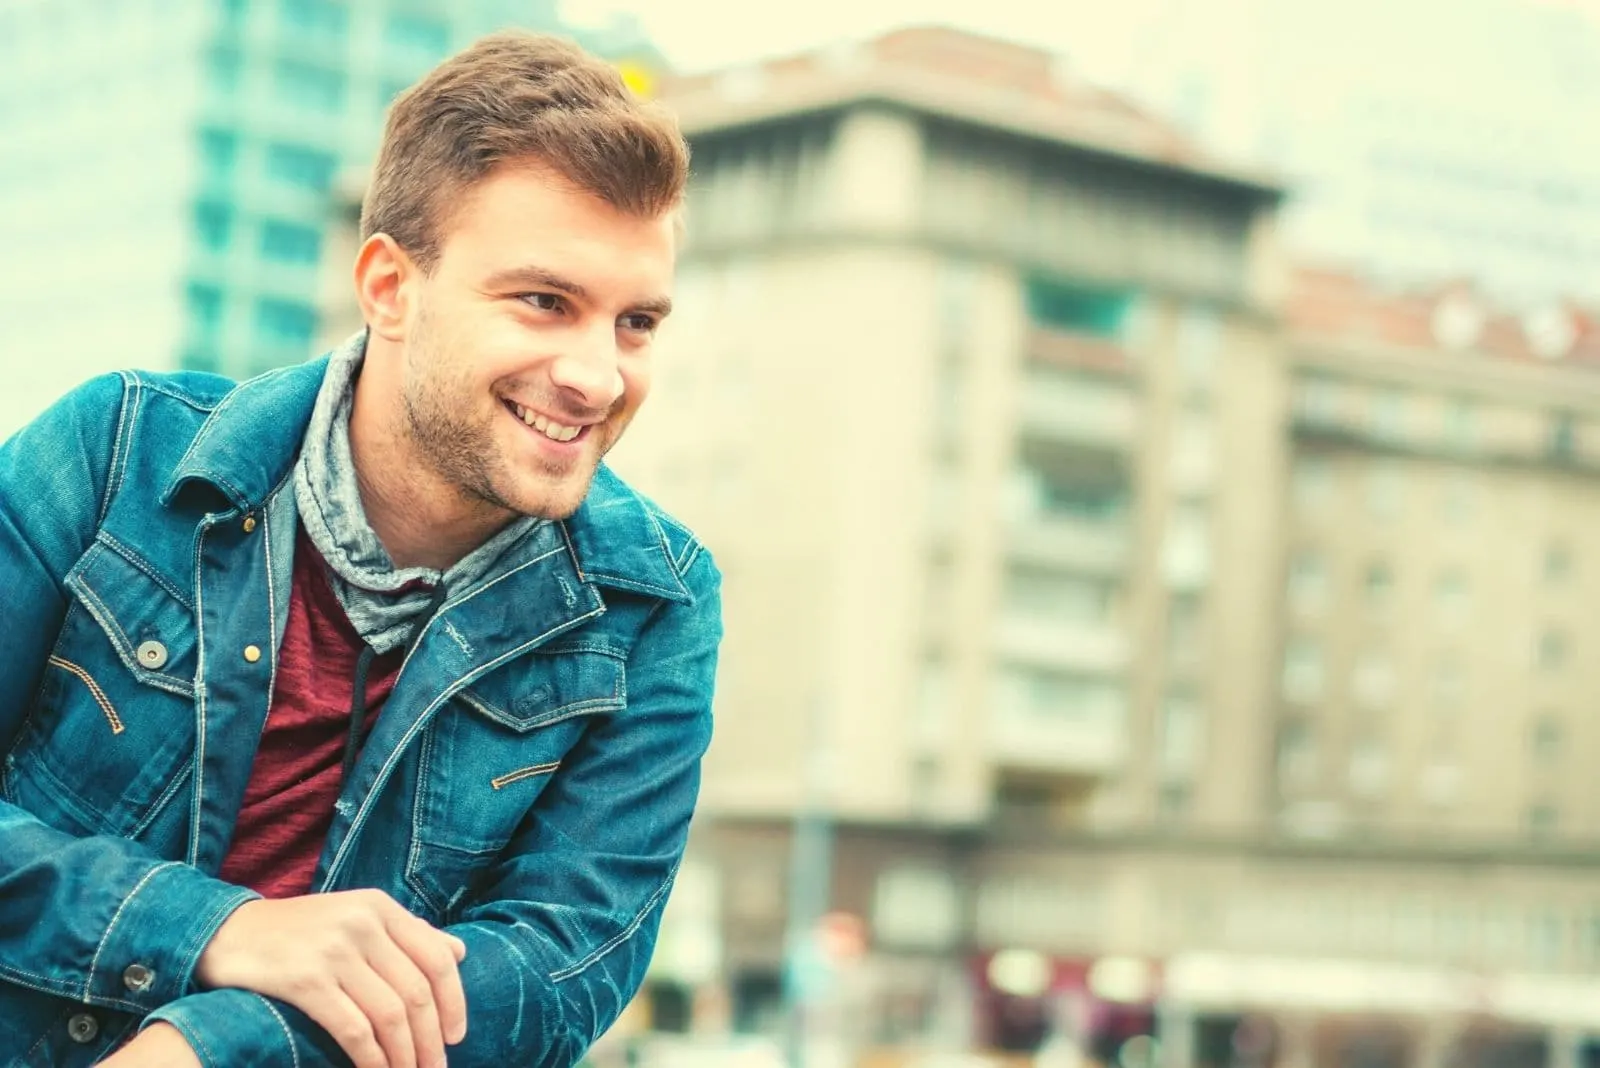 happy man smiling outdoors wearing denim jacket